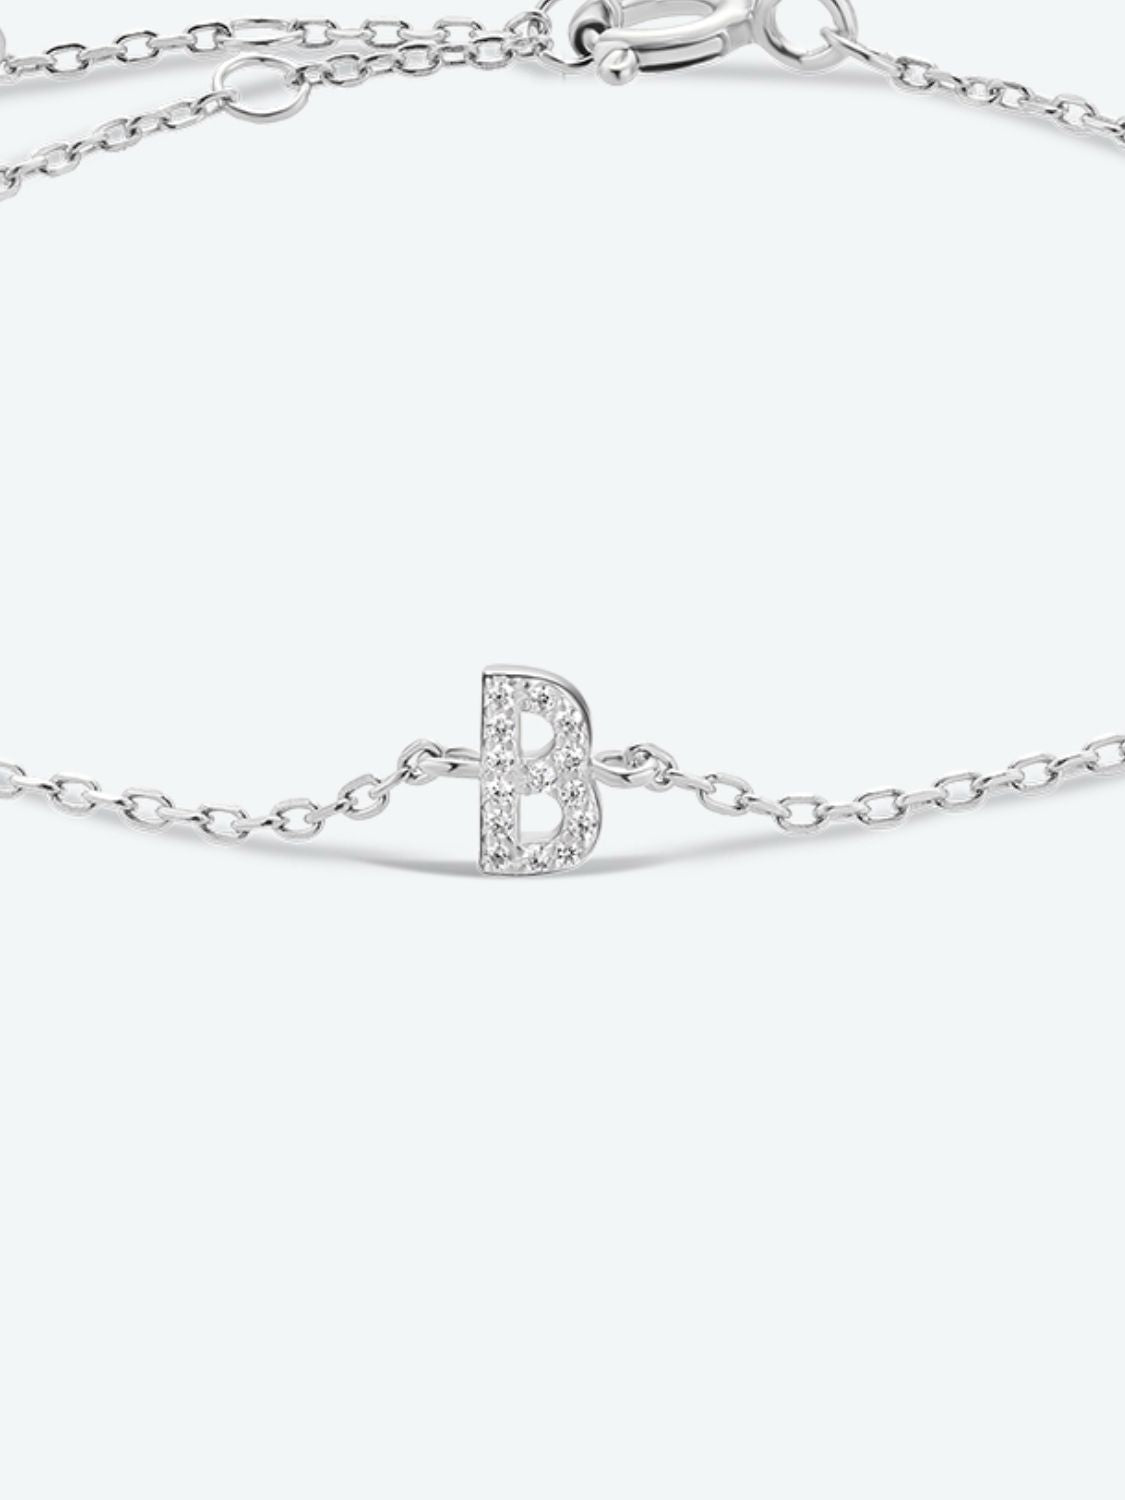 A To F Zircon 925 Sterling Silver Bracelet - Women’s Jewelry - Bracelets - 11 - 2024